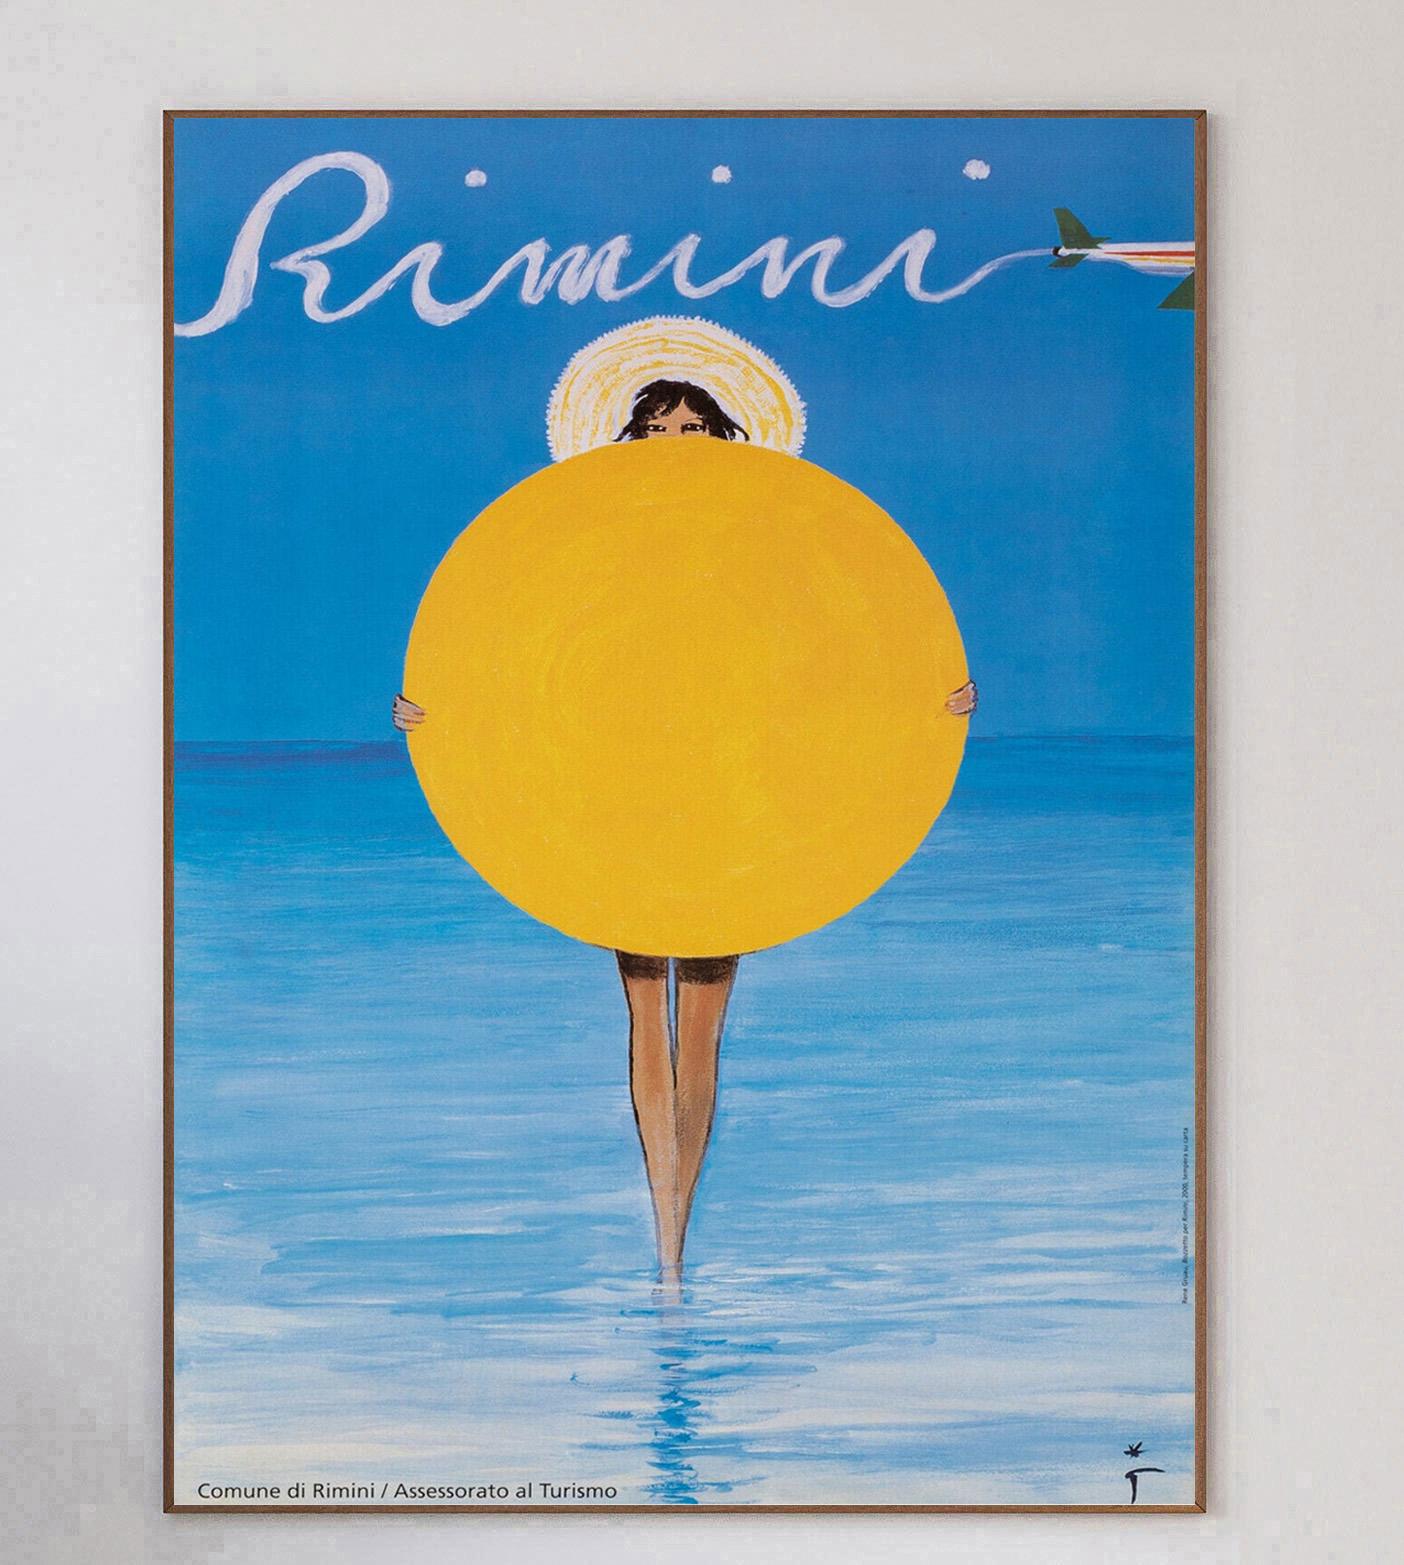 Dessinée par l'iconique affichiste René Gruau, cette affiche a été créée en 2000 pour promouvoir la ville italienne de Rimini. Cette magnifique station balnéaire du nord de l'Italie est très appréciée des touristes et ce magnifique dessin en est la